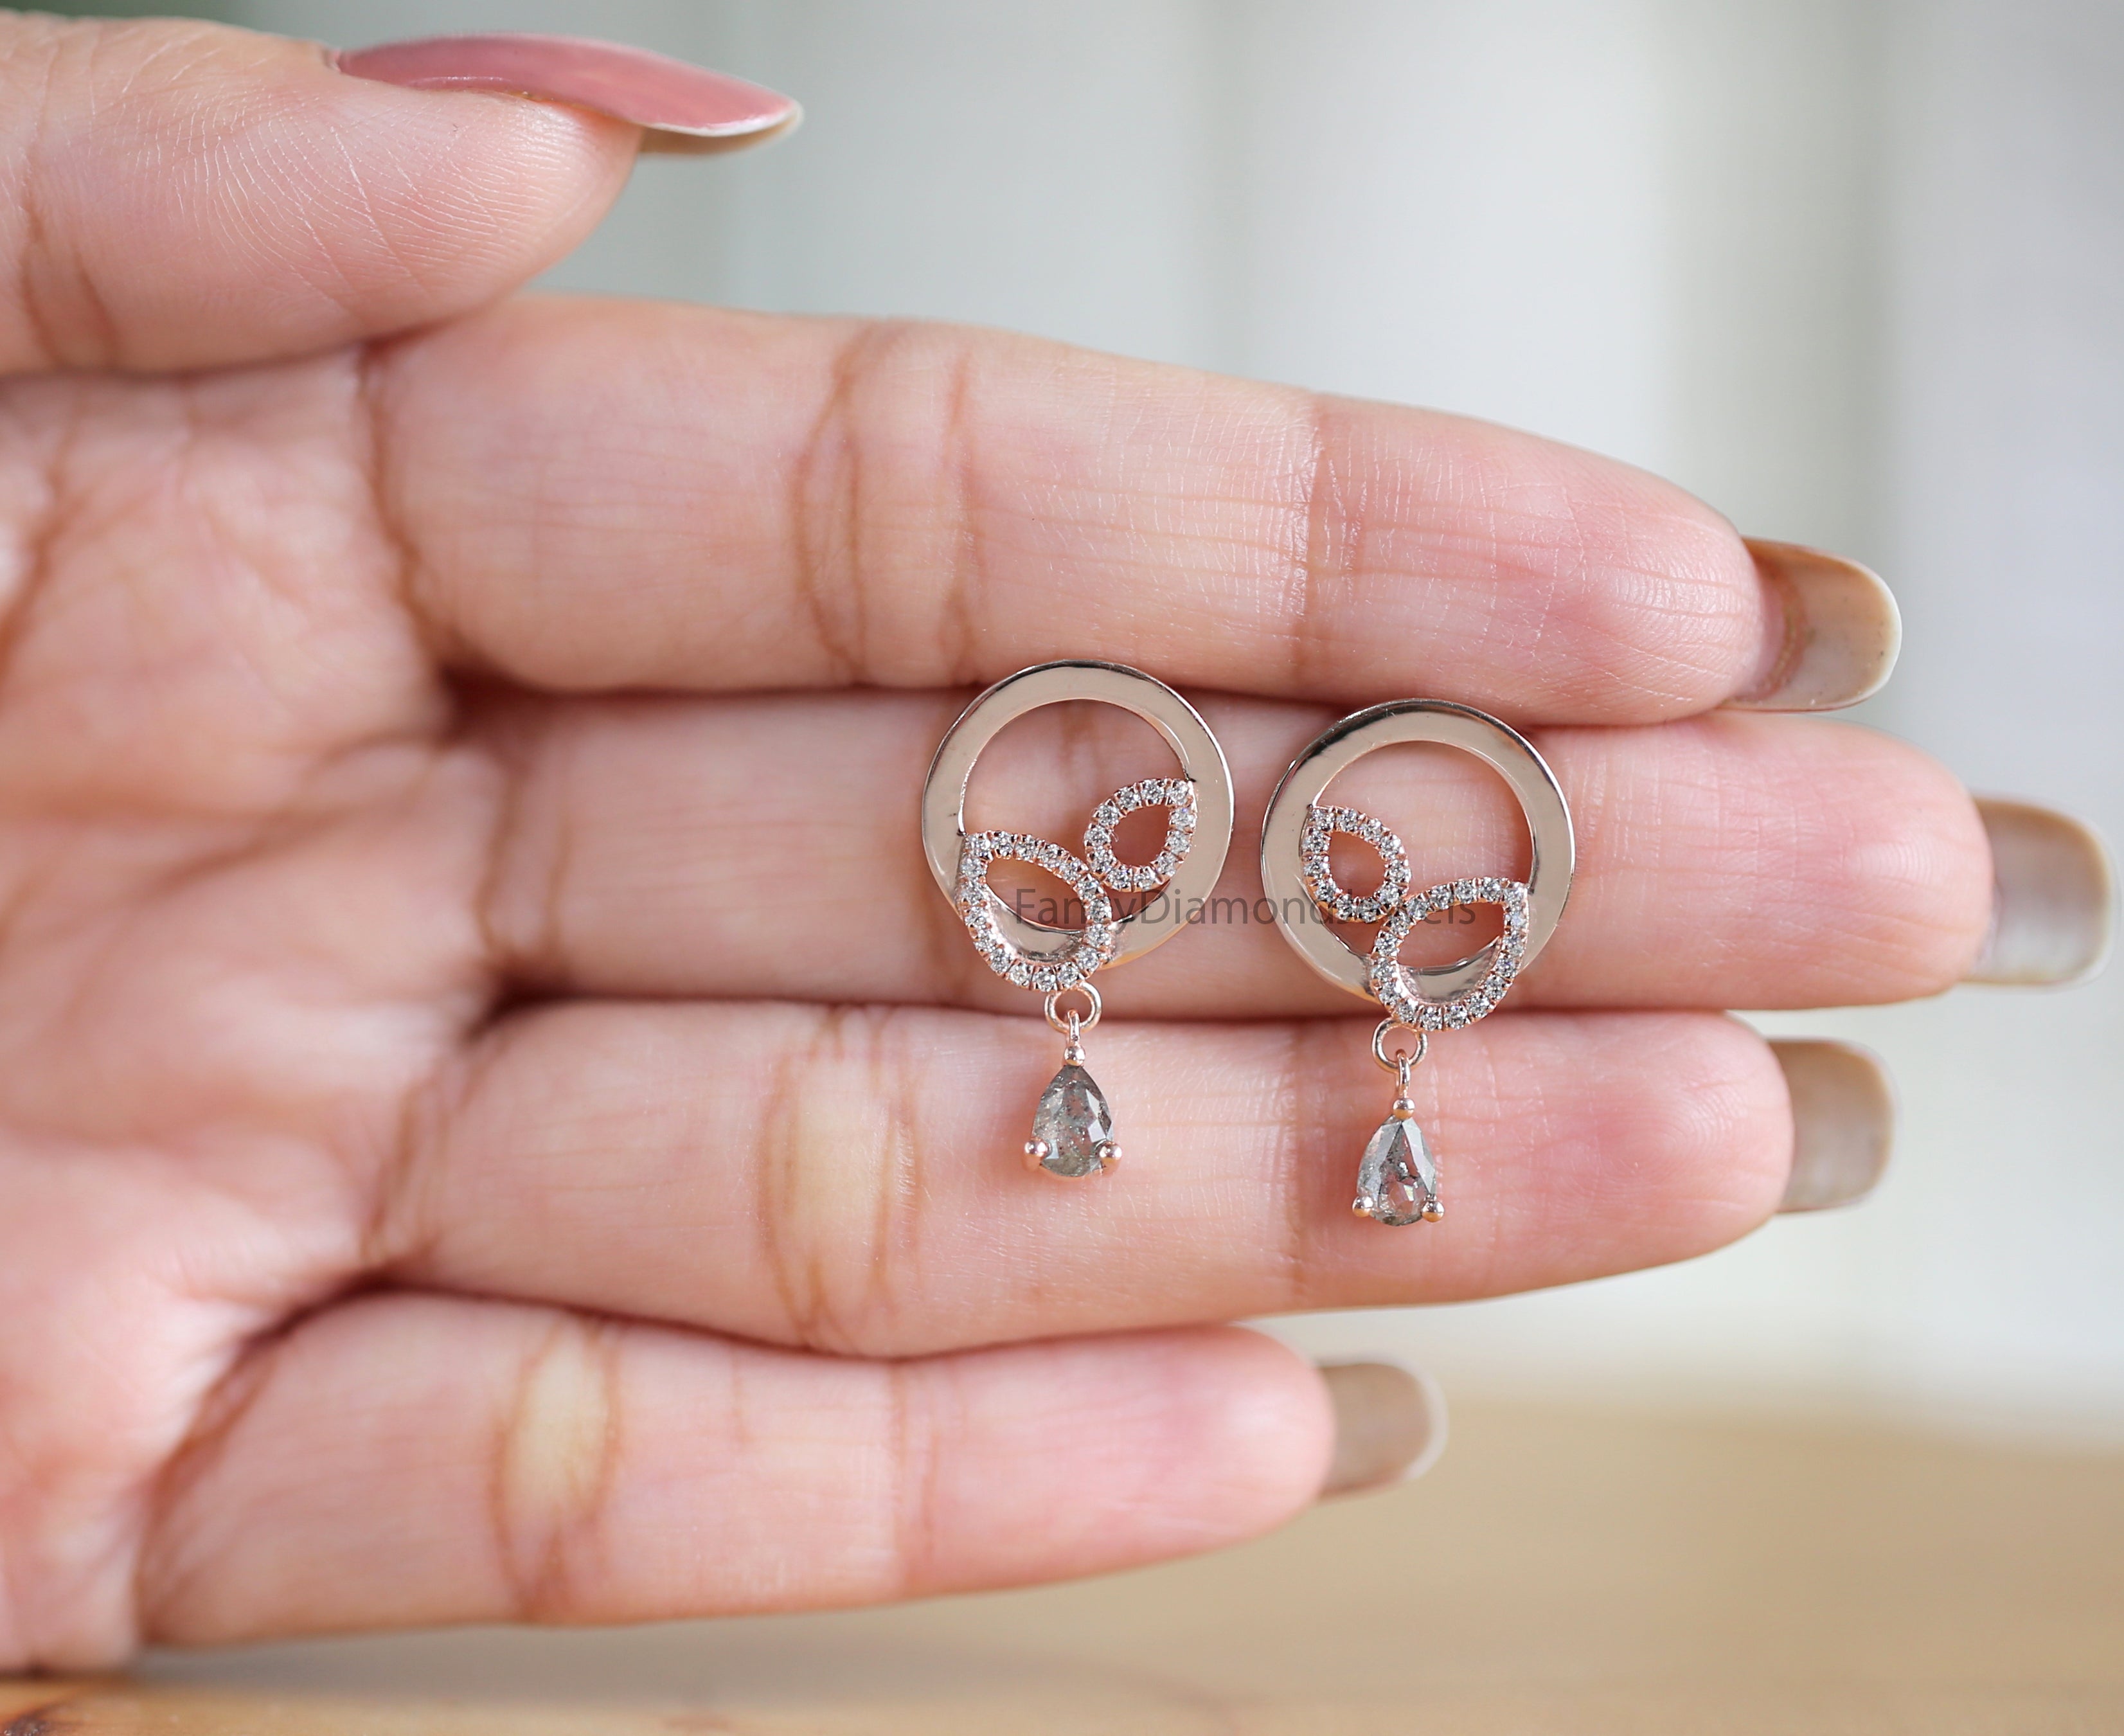 Pear Salt And Pepper Diamond Earring, Pear Shape Earring, Prong Earring, Engagement Earring, Earlobe Earrings, Earrings Jewelry, KDN2277